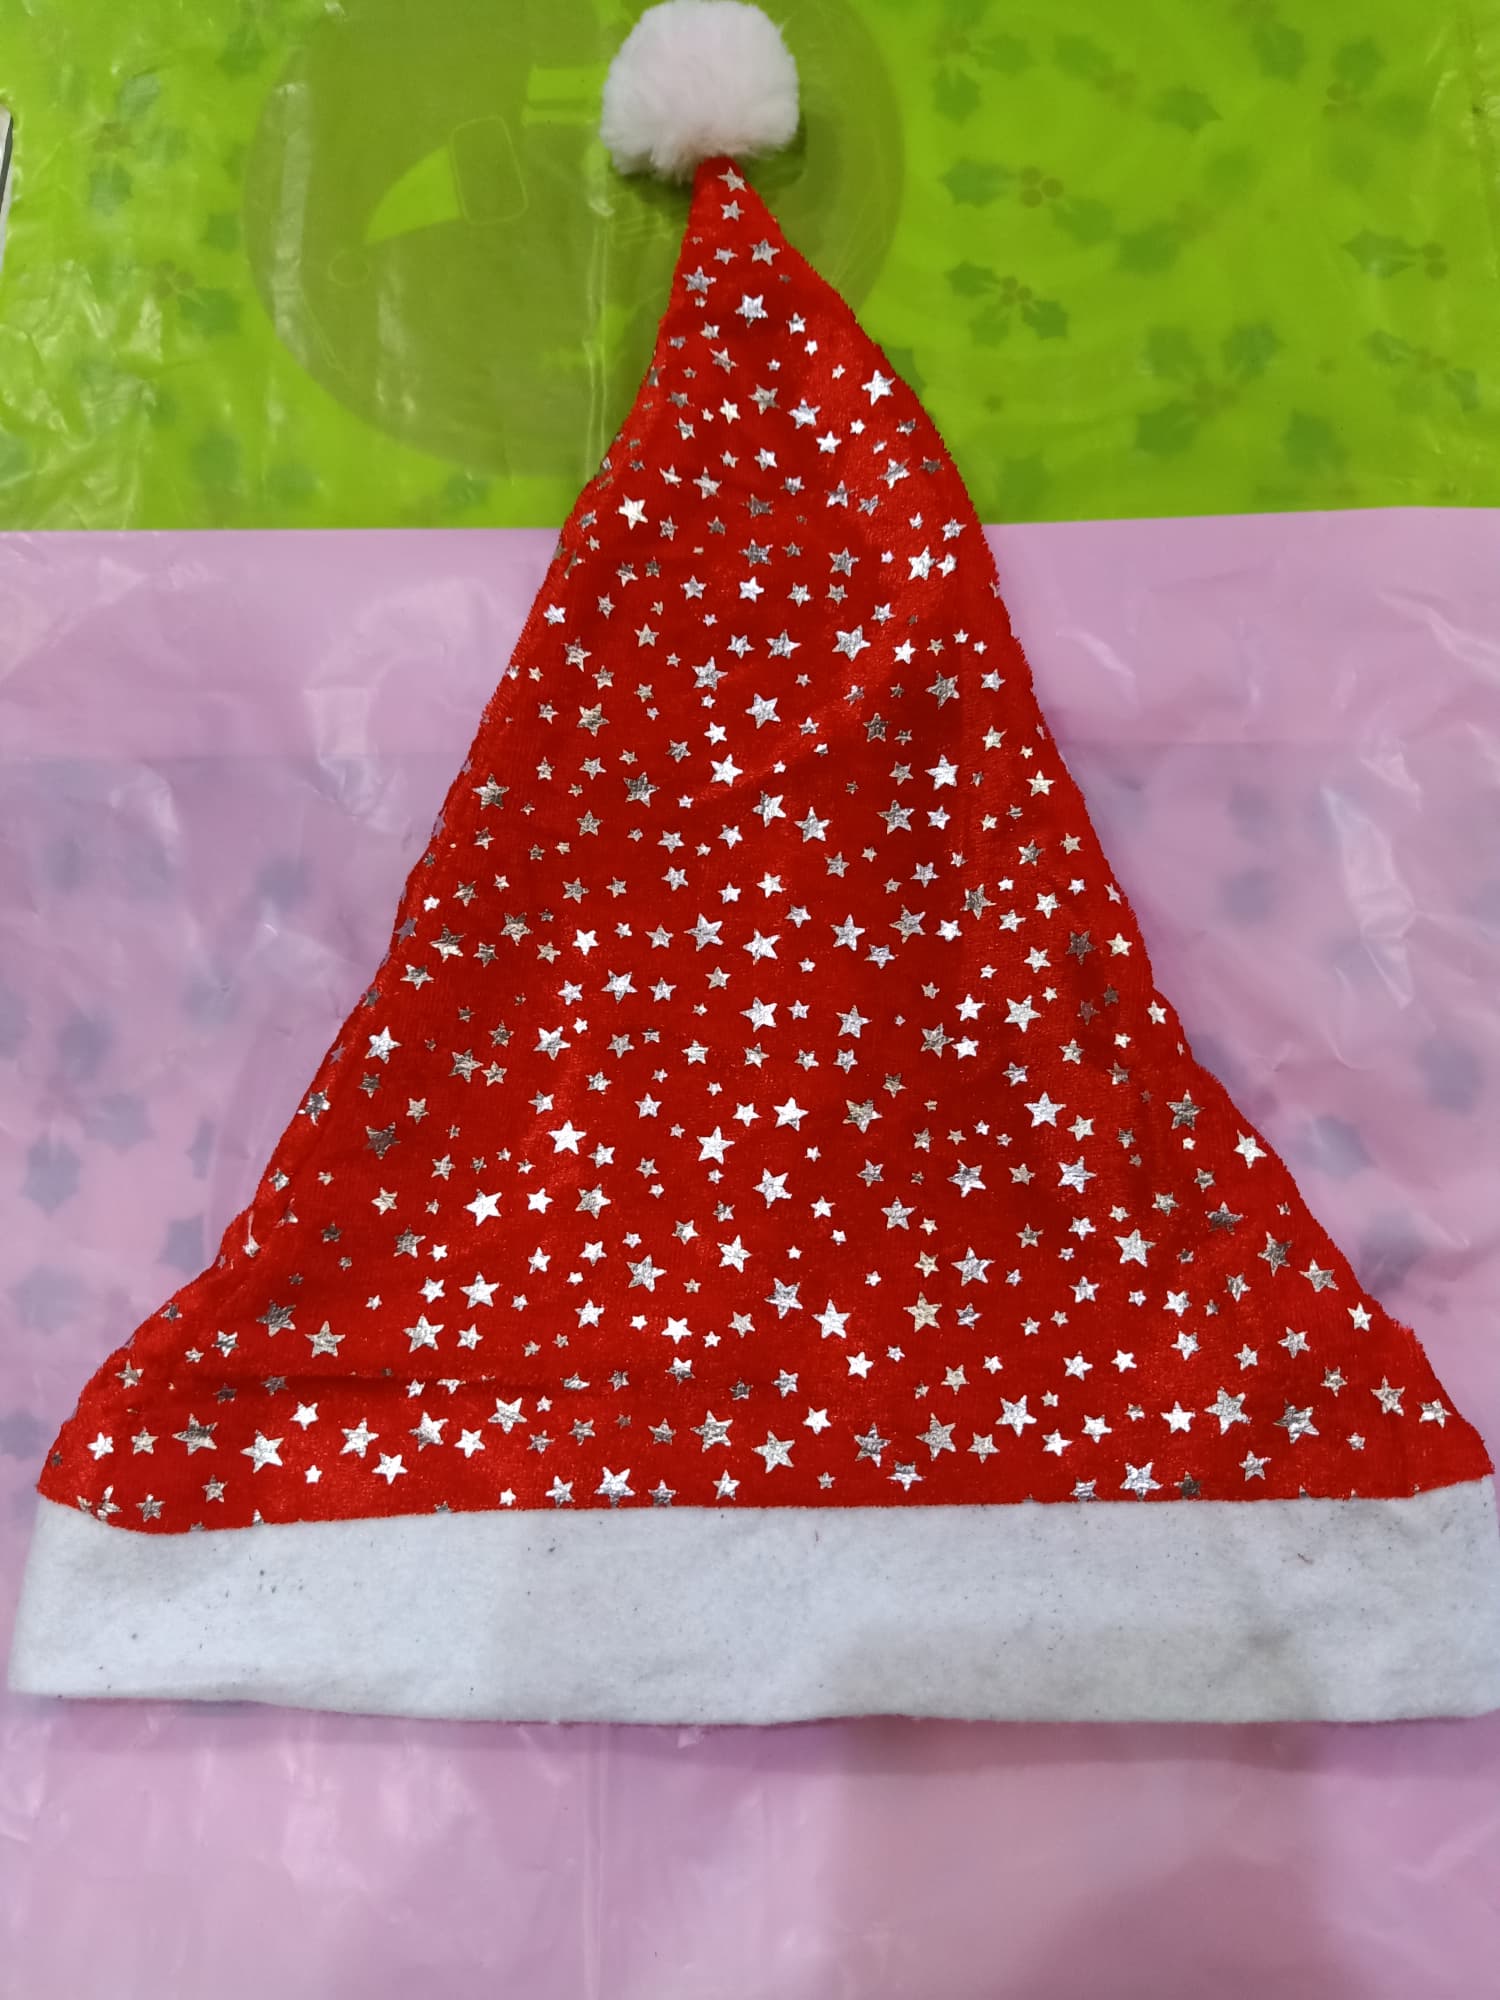 หมวกซานต้าครอส แซนตี้  สำหรับช่วงคริสมาส ปีใหม่ หมวกสีแดงผ้ากำมะหยี่พิมลายดาว